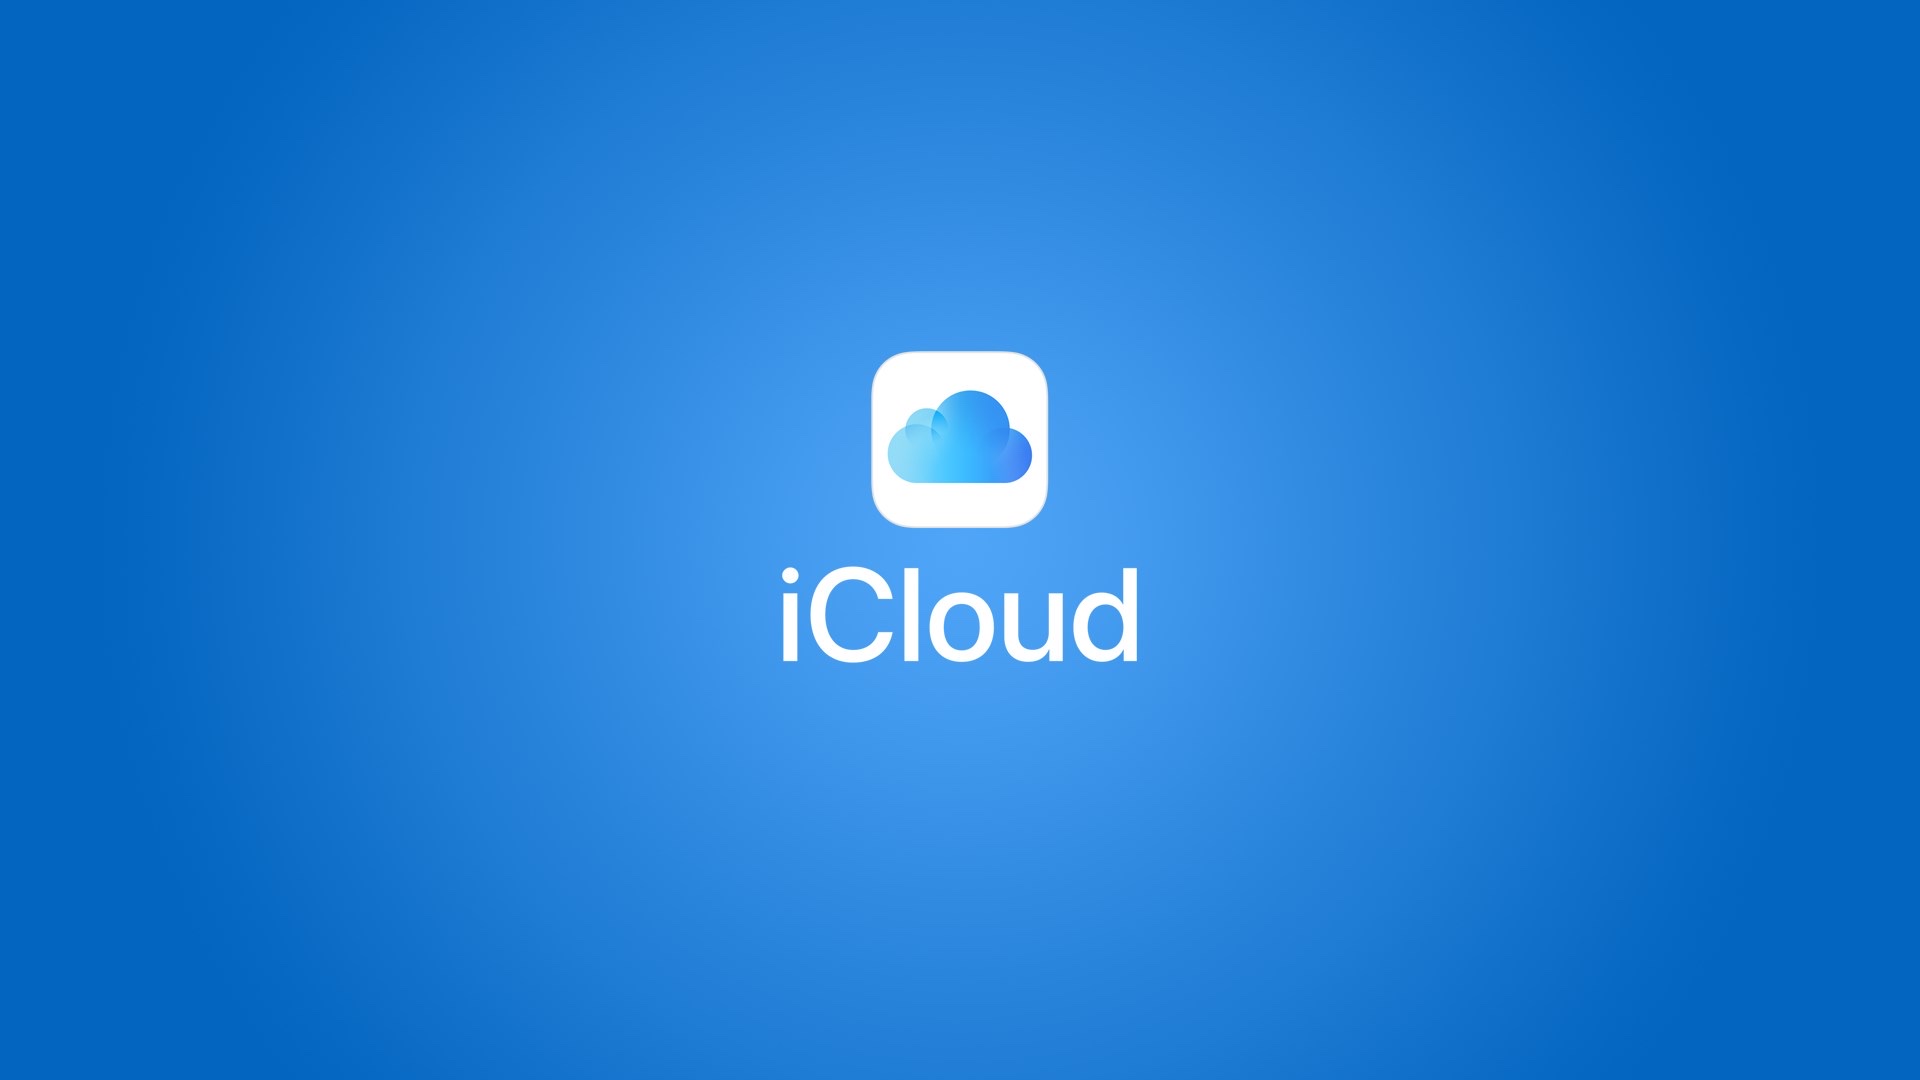 Apple merilis versi baru iCloud yang dioptimalkan untuk Windows 10